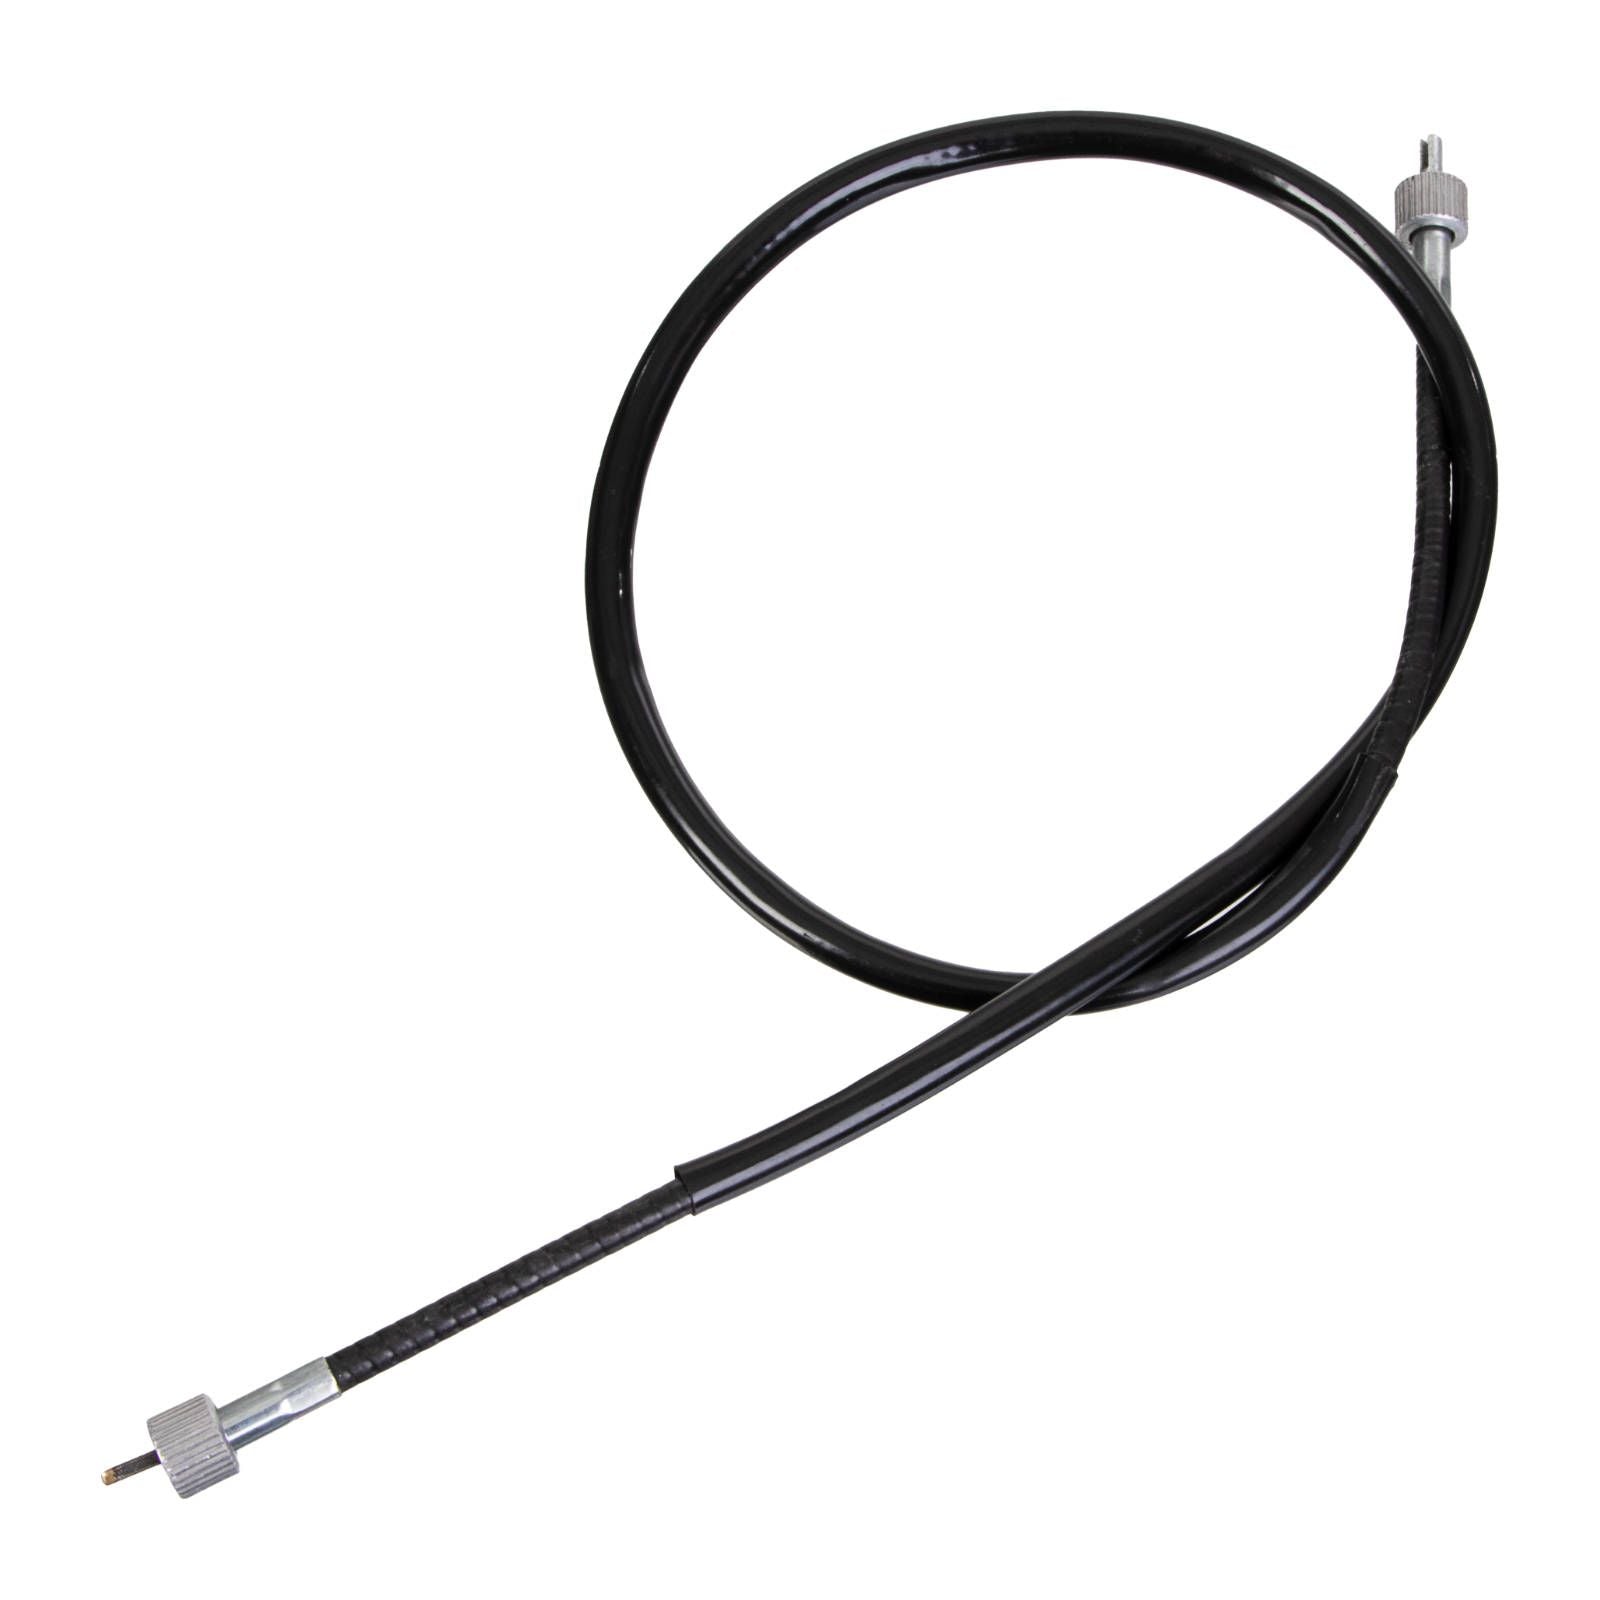 New WHITES Speedo Cable For Kawasaki KLR250/300/650 Asstd Yrs #WPCC03005